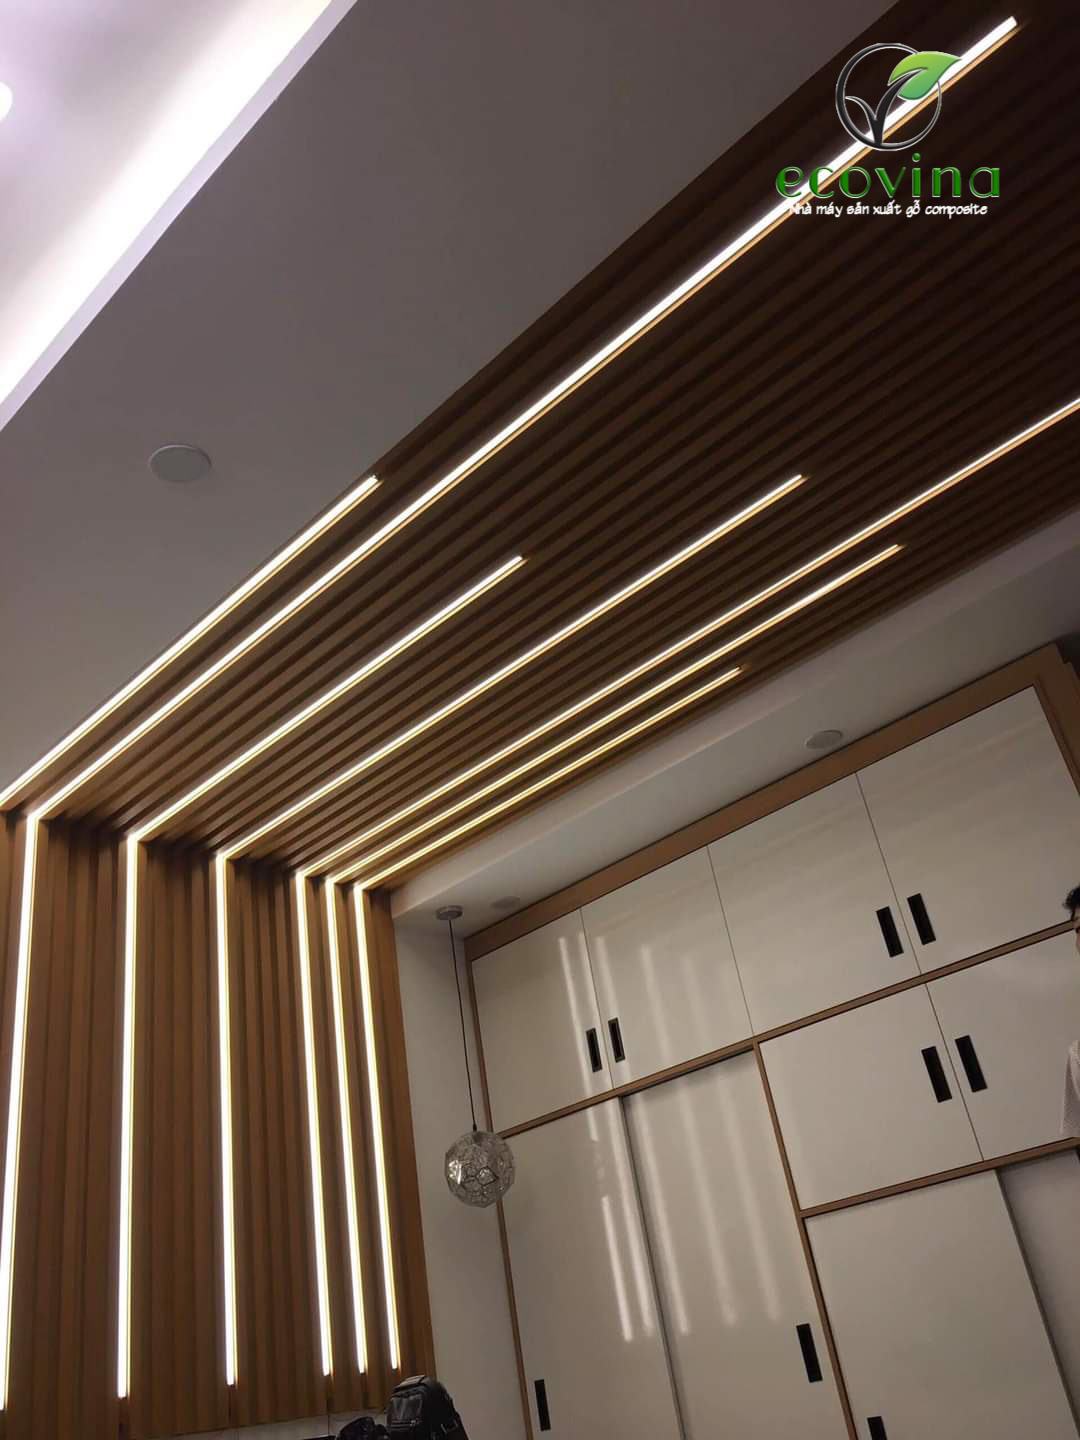 Lam gỗ nhựa Ecovina kết hợp đèn led trần- tường